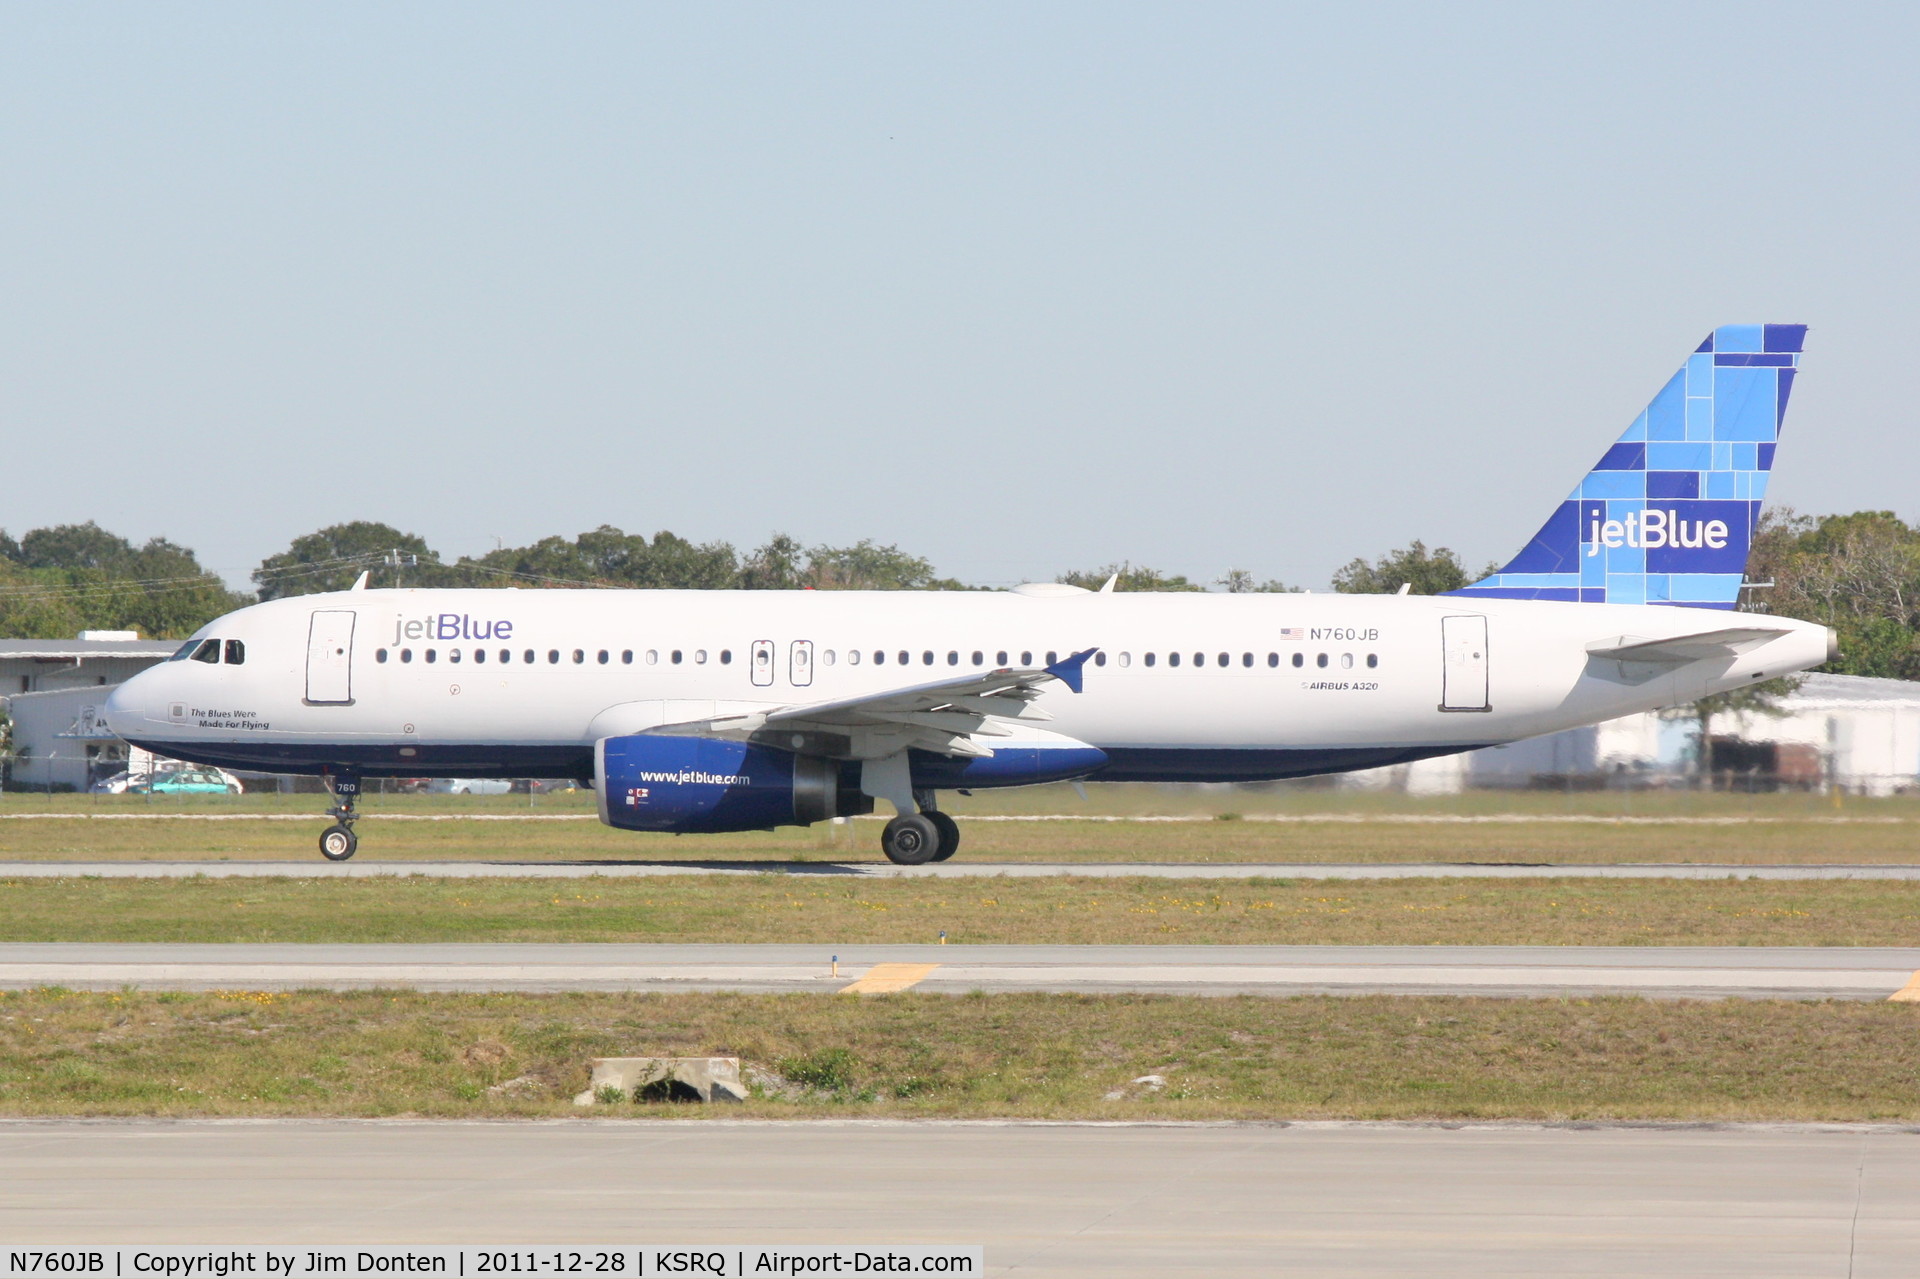 N760JB, 2008 Airbus A320-232 C/N 3659, Jet Blue Airbus A320 (N760JB) departs Runway 32 at Sarasota-Bradenton International Airport